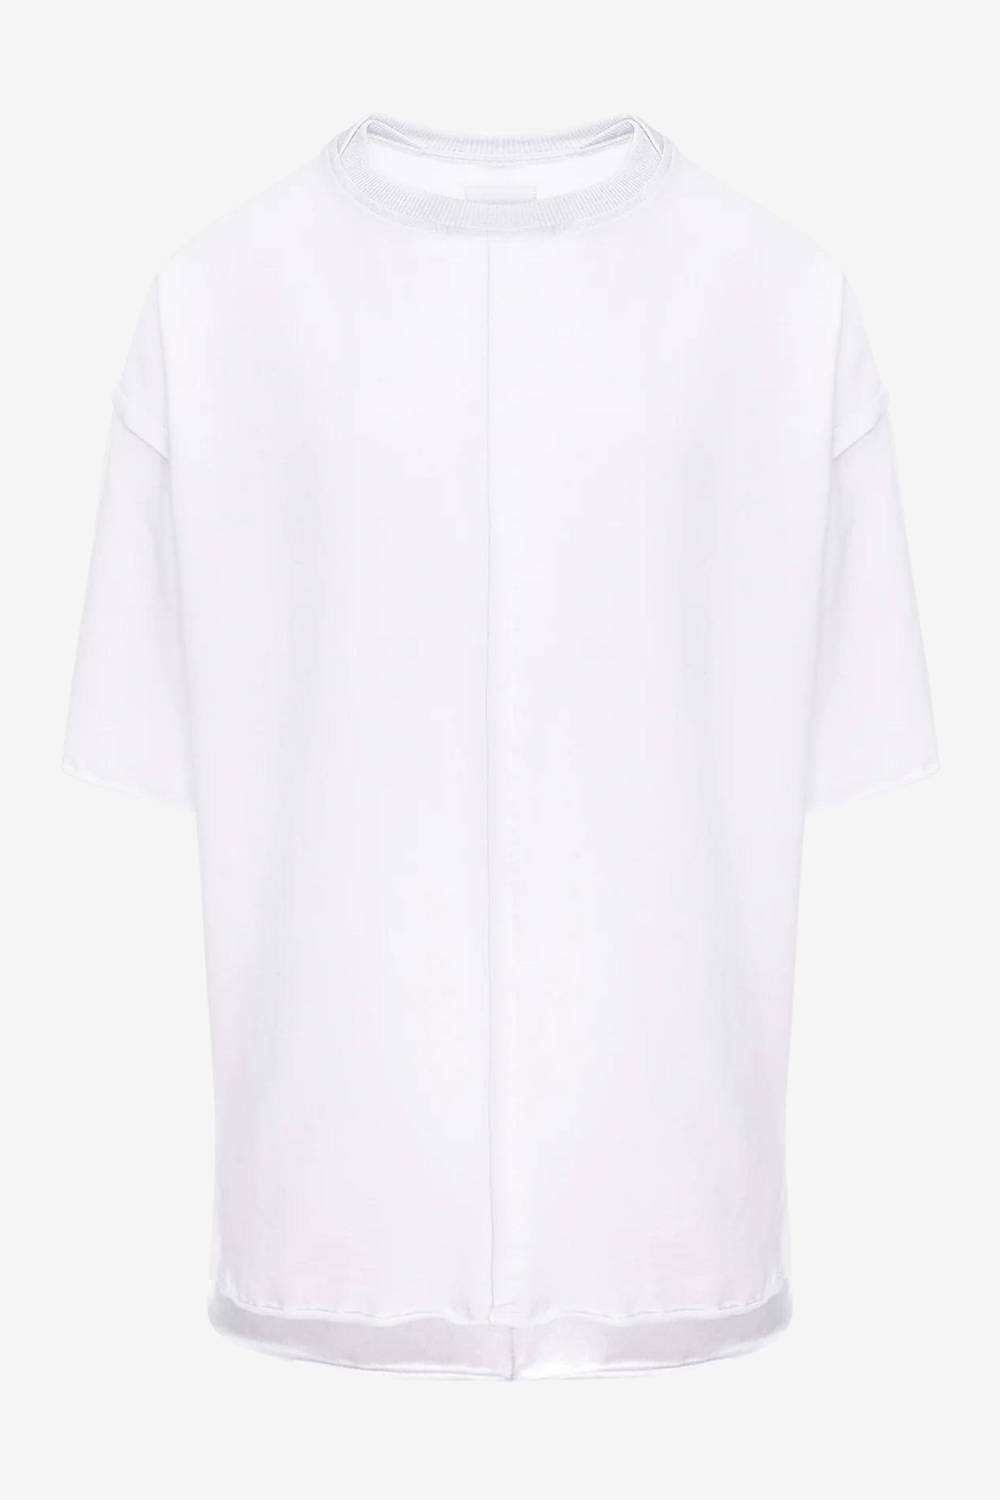 Tricou bărbătesc, alb, bumbac premium, croială oversized, detalii moderne (finișaje crude, cusături decorative).